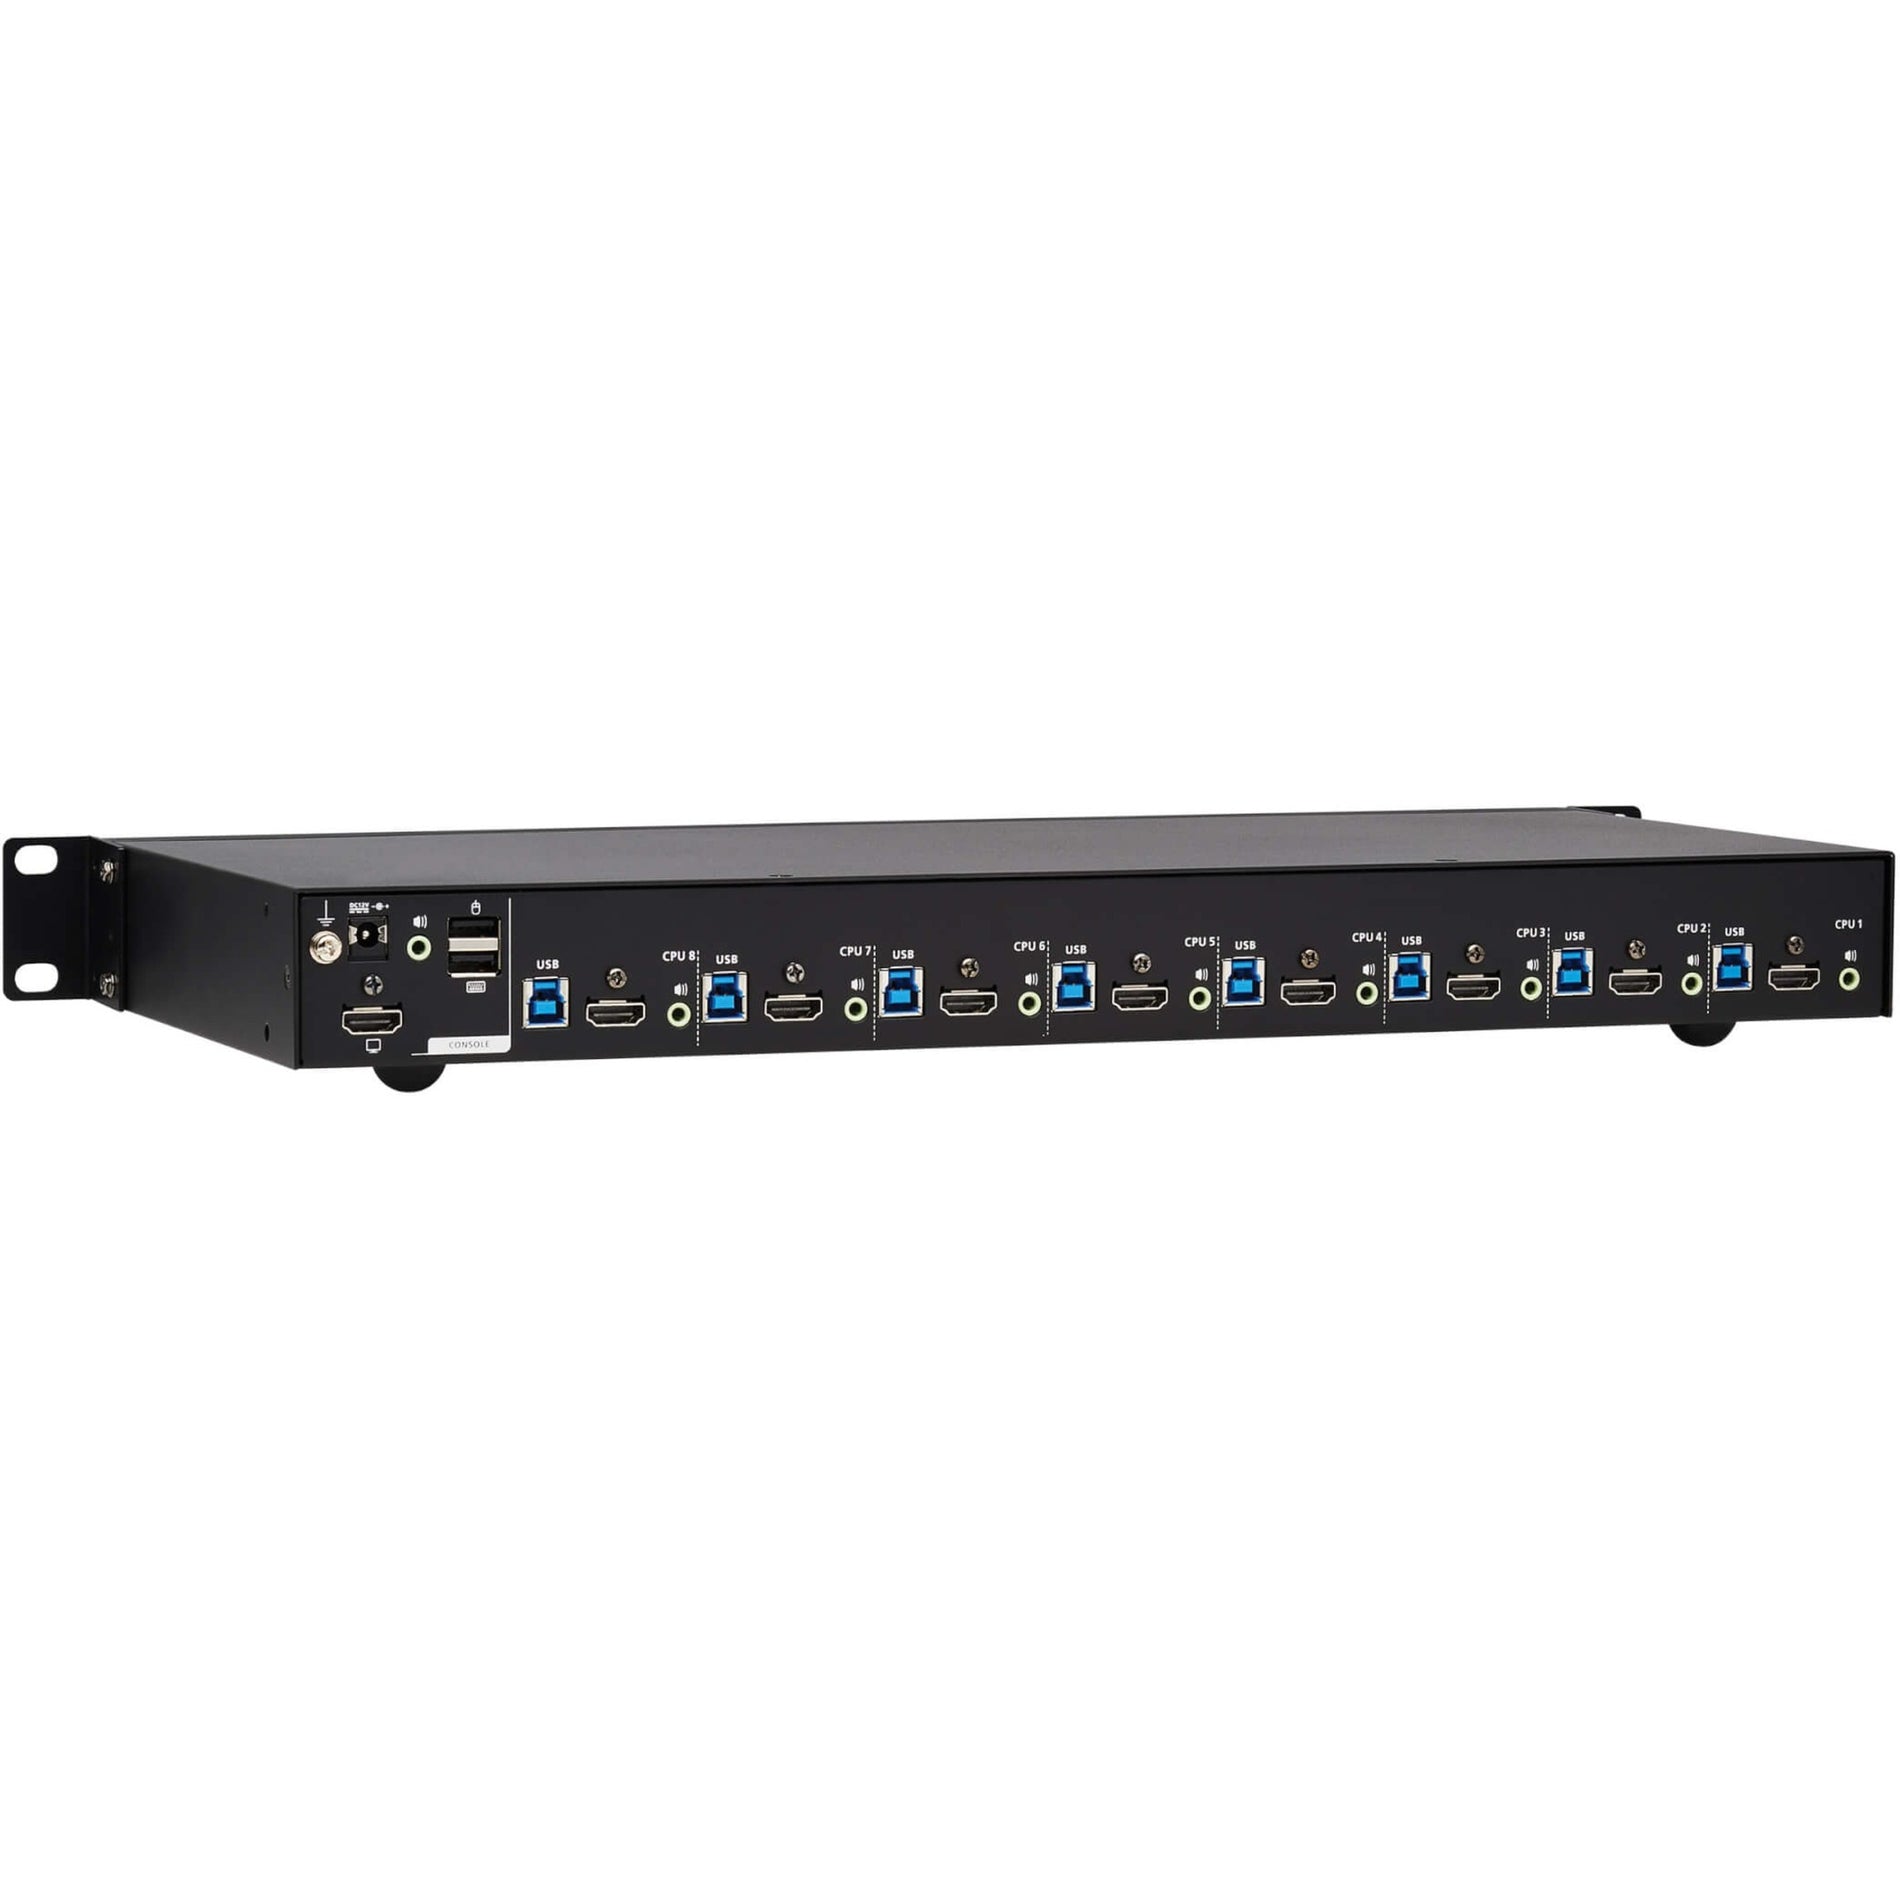 Tripp Lite B024-H4U08 8-Port HDMI/USB KVM Switch, 1U, 4K Resolution, TAA Compliant